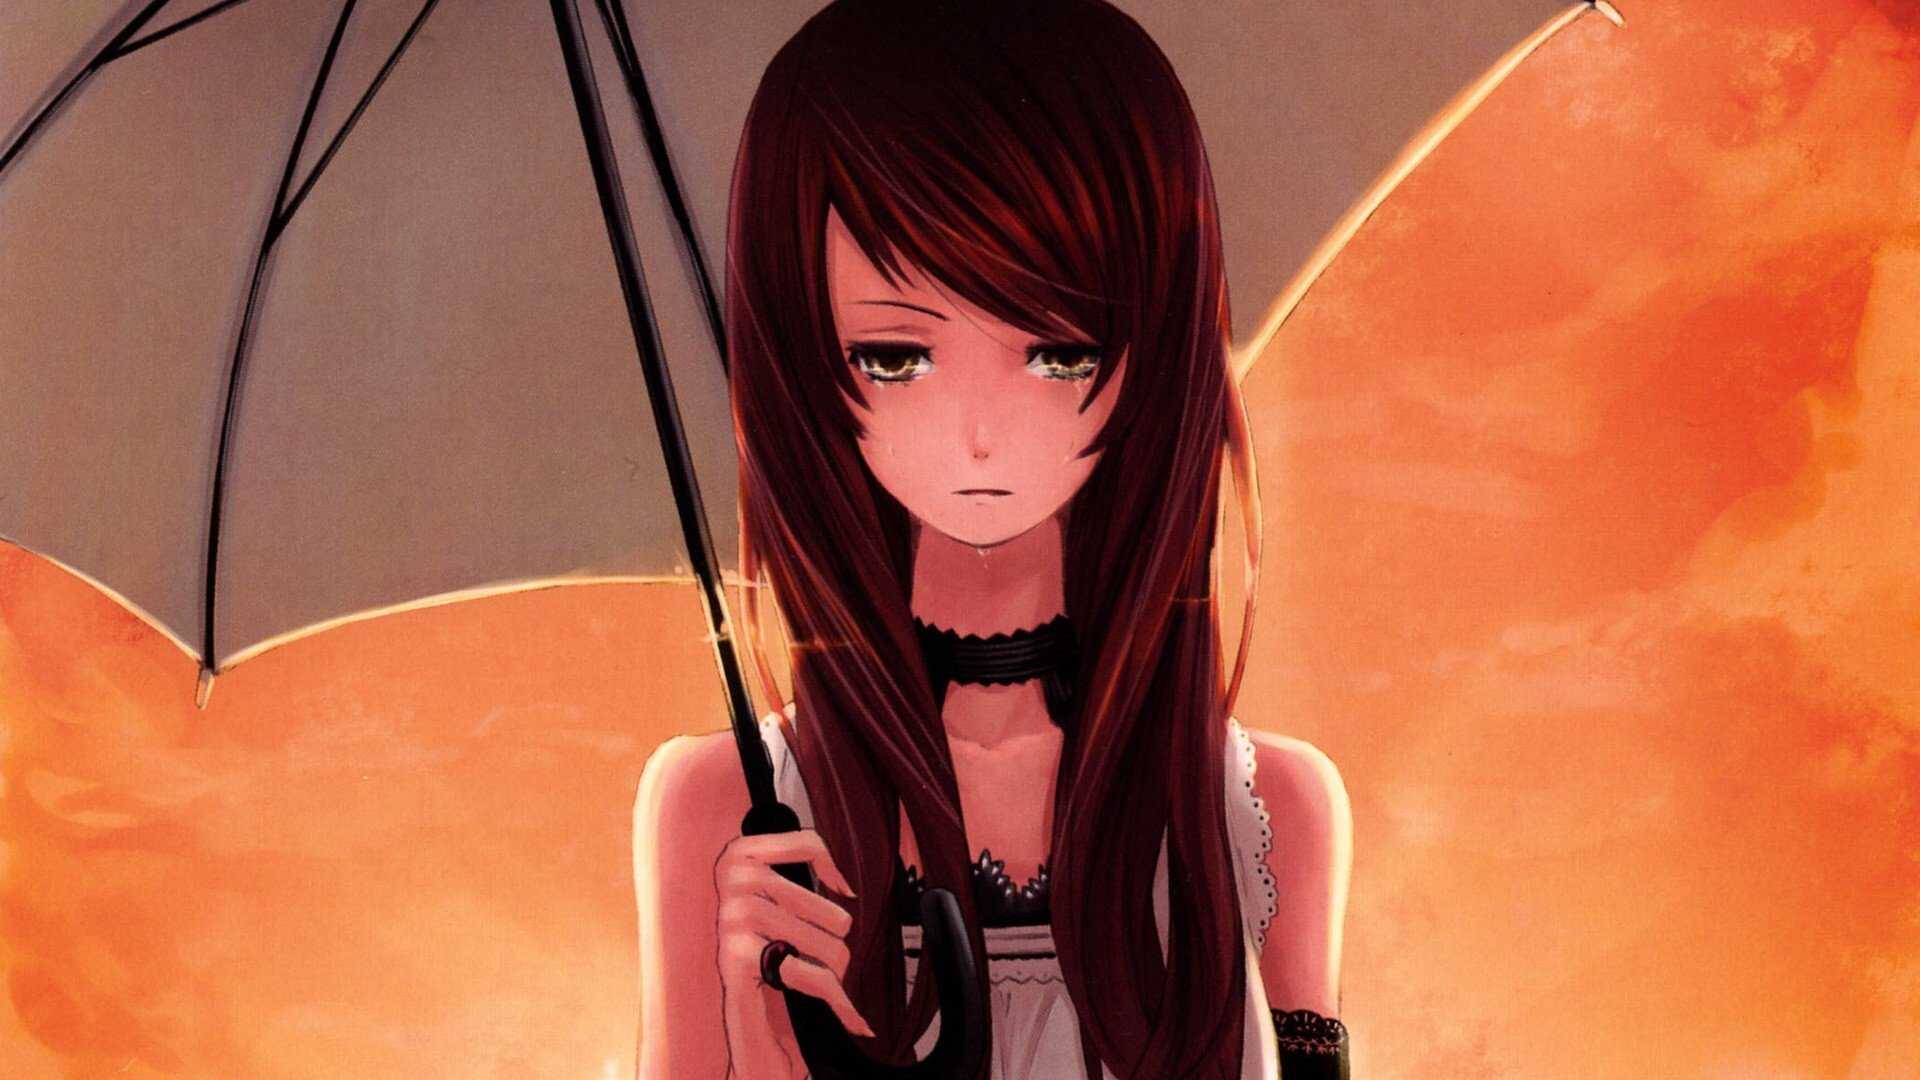 Sad Anime Girl HD Wallpapers